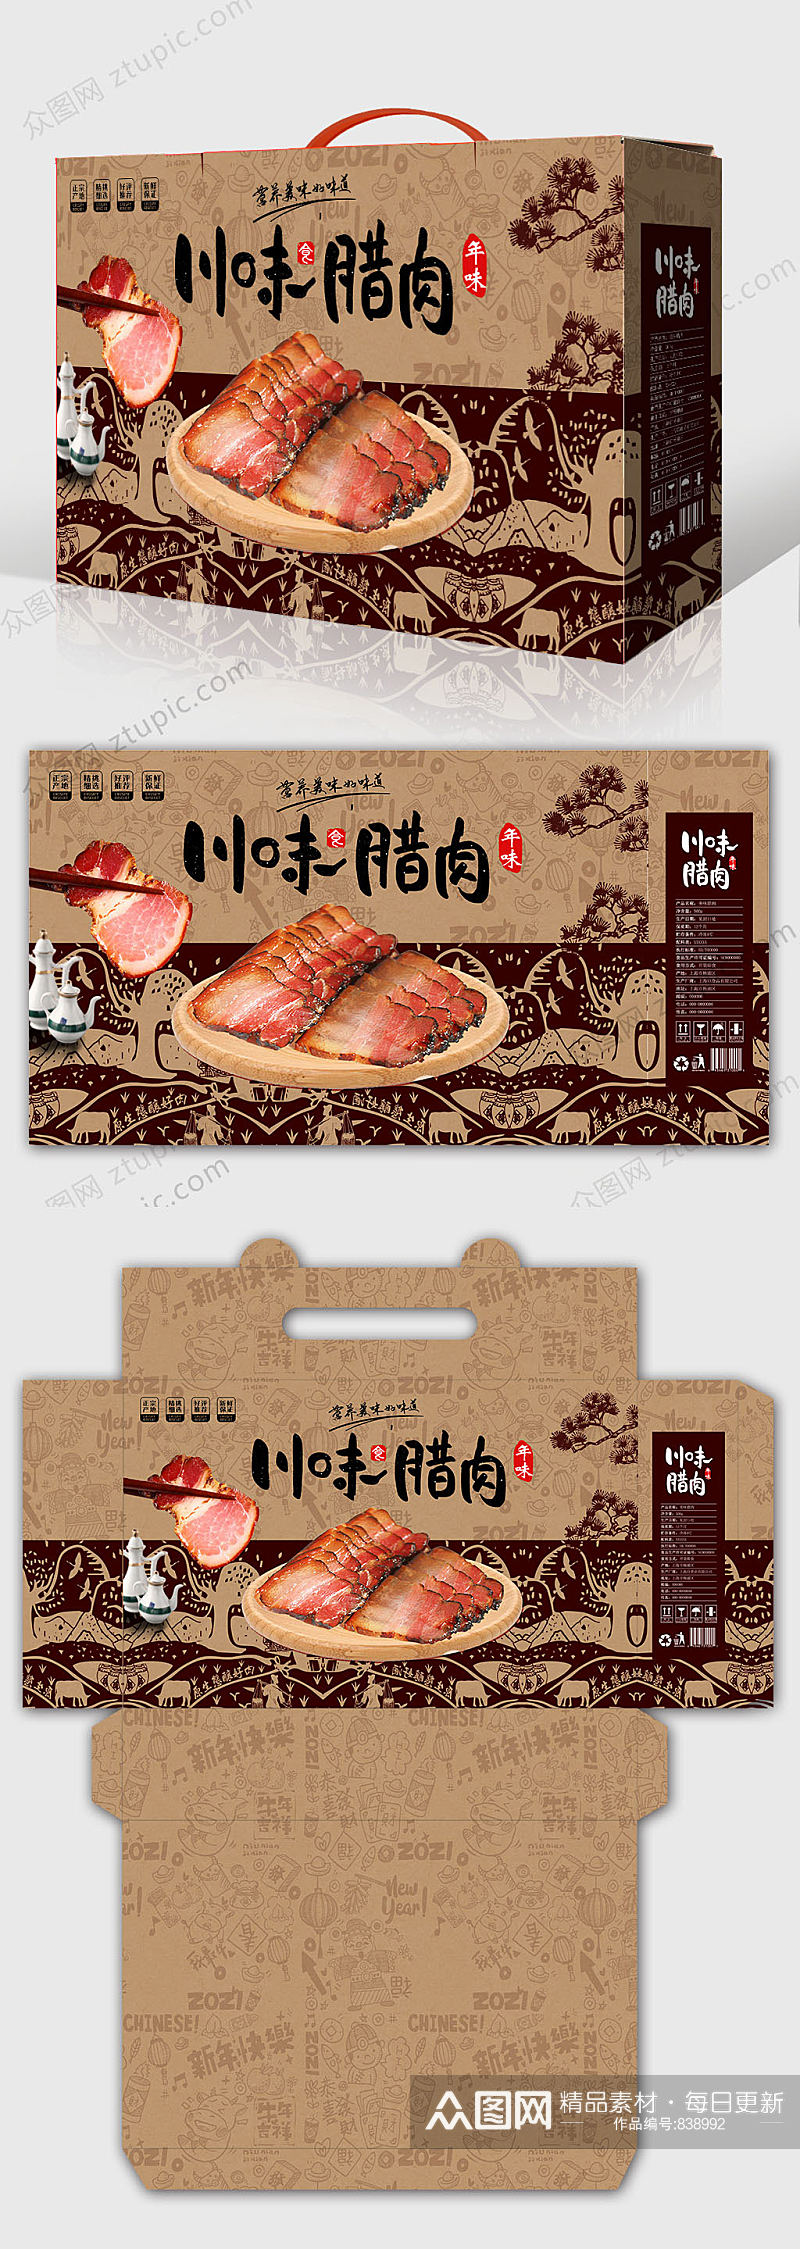 新年 年货礼盒包装 腊味腊肉腊肠土特产包装设计素材